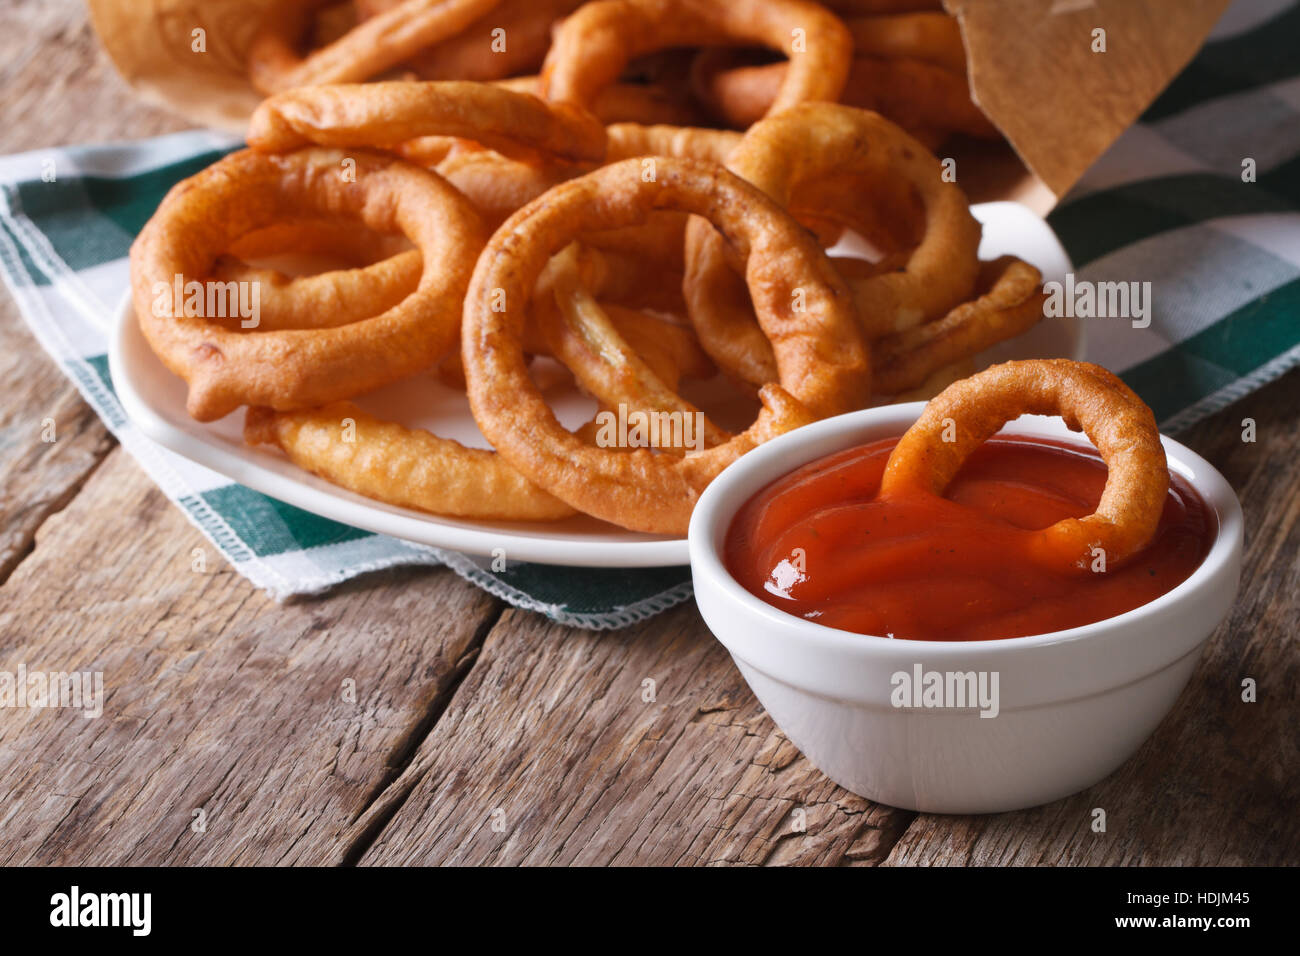 Aros de cebolla frita y ketchup closeup. horizontal sobre la tabla antigua Foto de stock